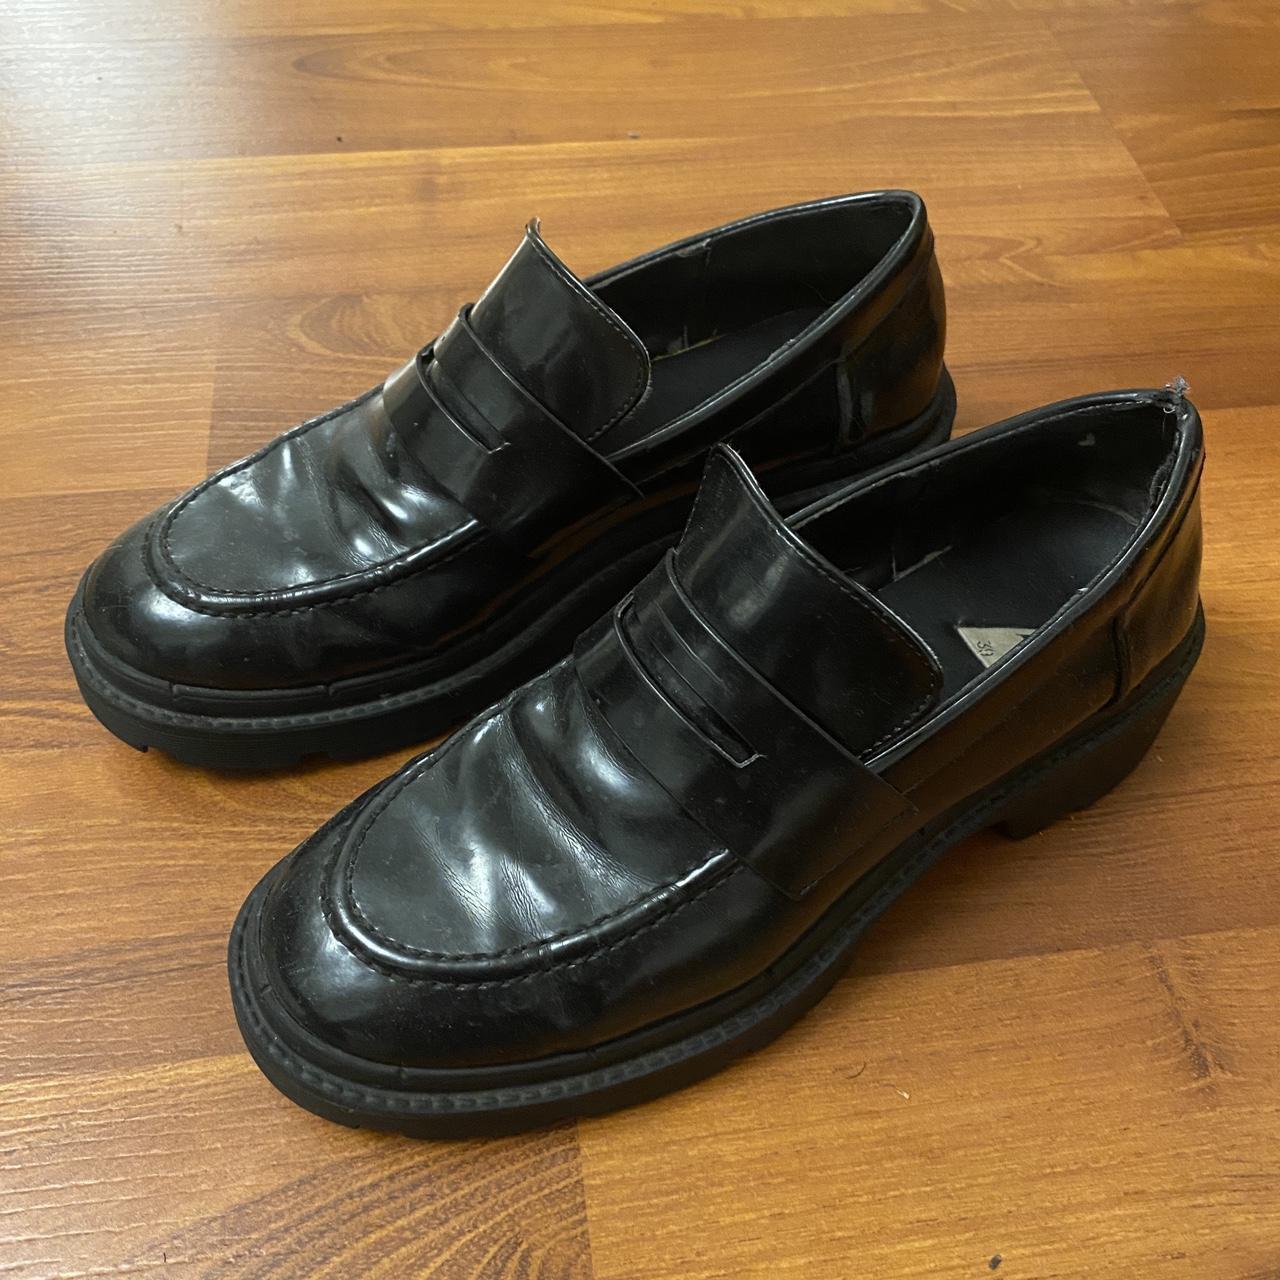 Zara Patent Black Platform Loafers, size 39. Some... - Depop